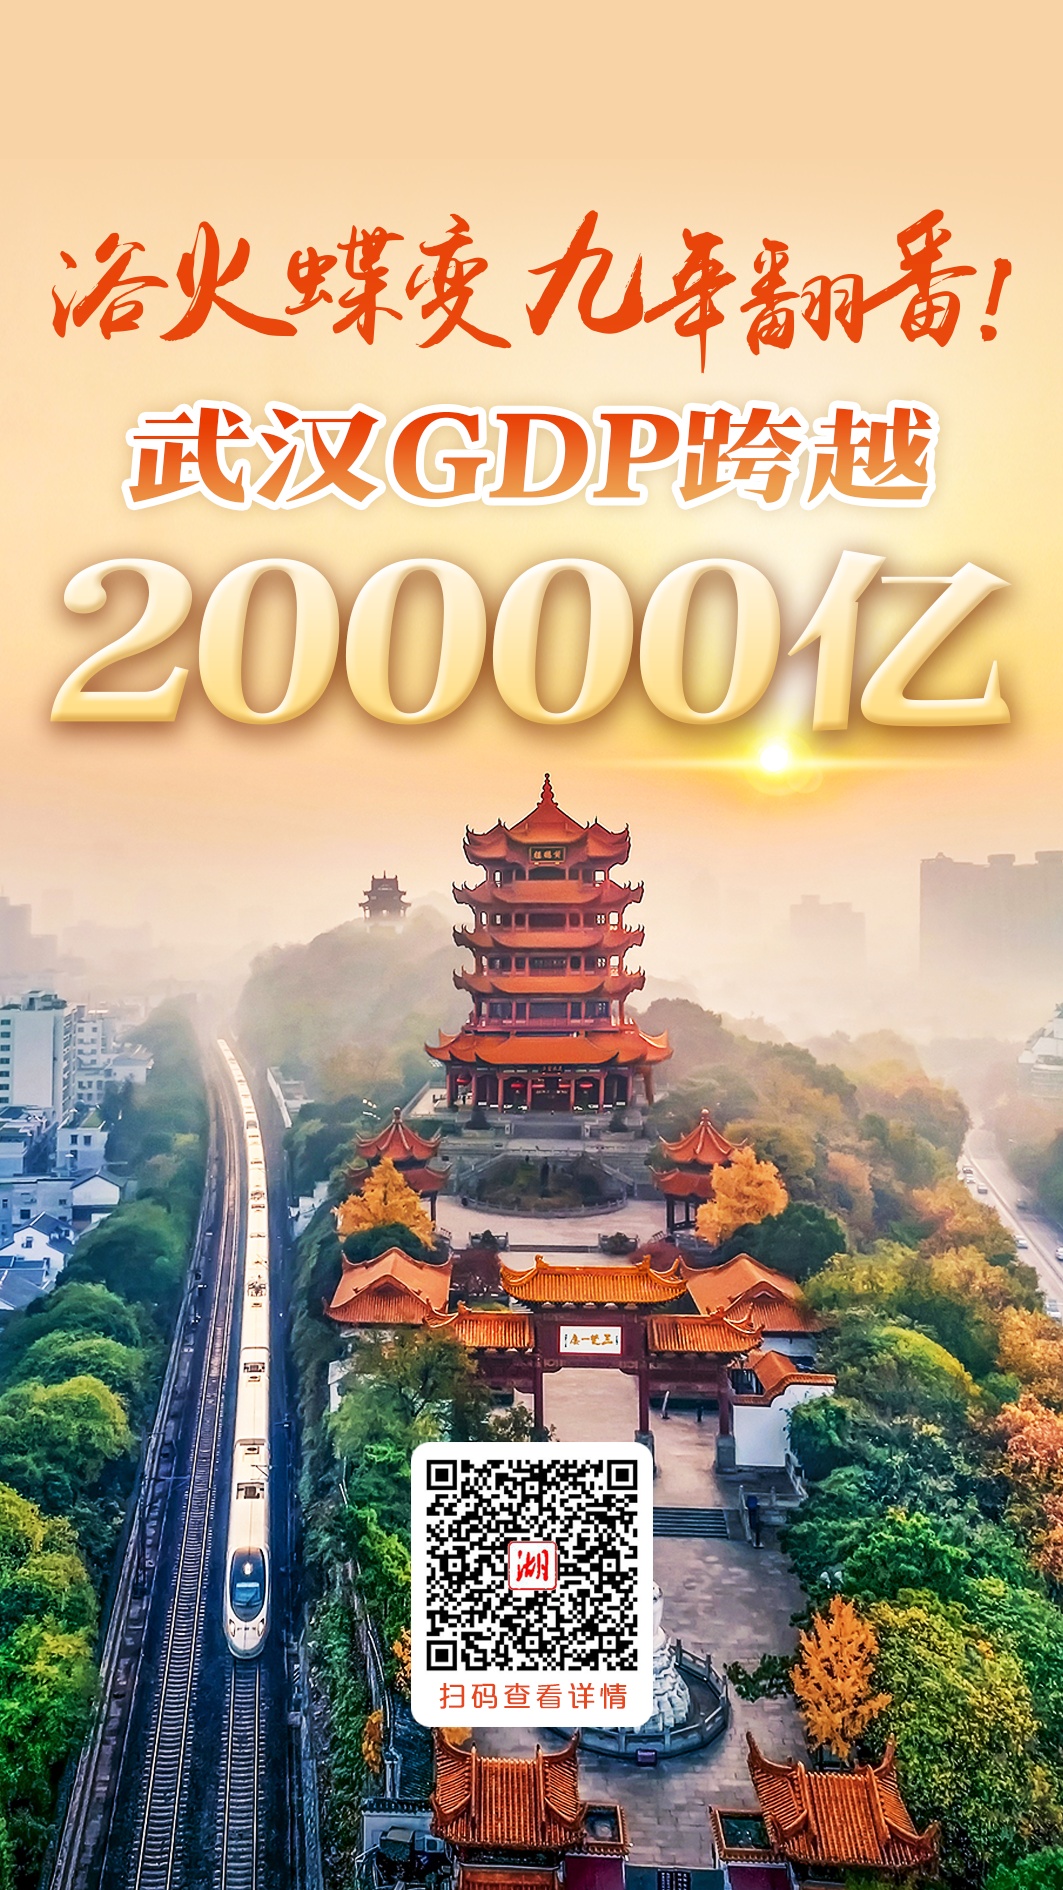 浴火蝶变 九年翻番！武汉GDP跨越两万亿